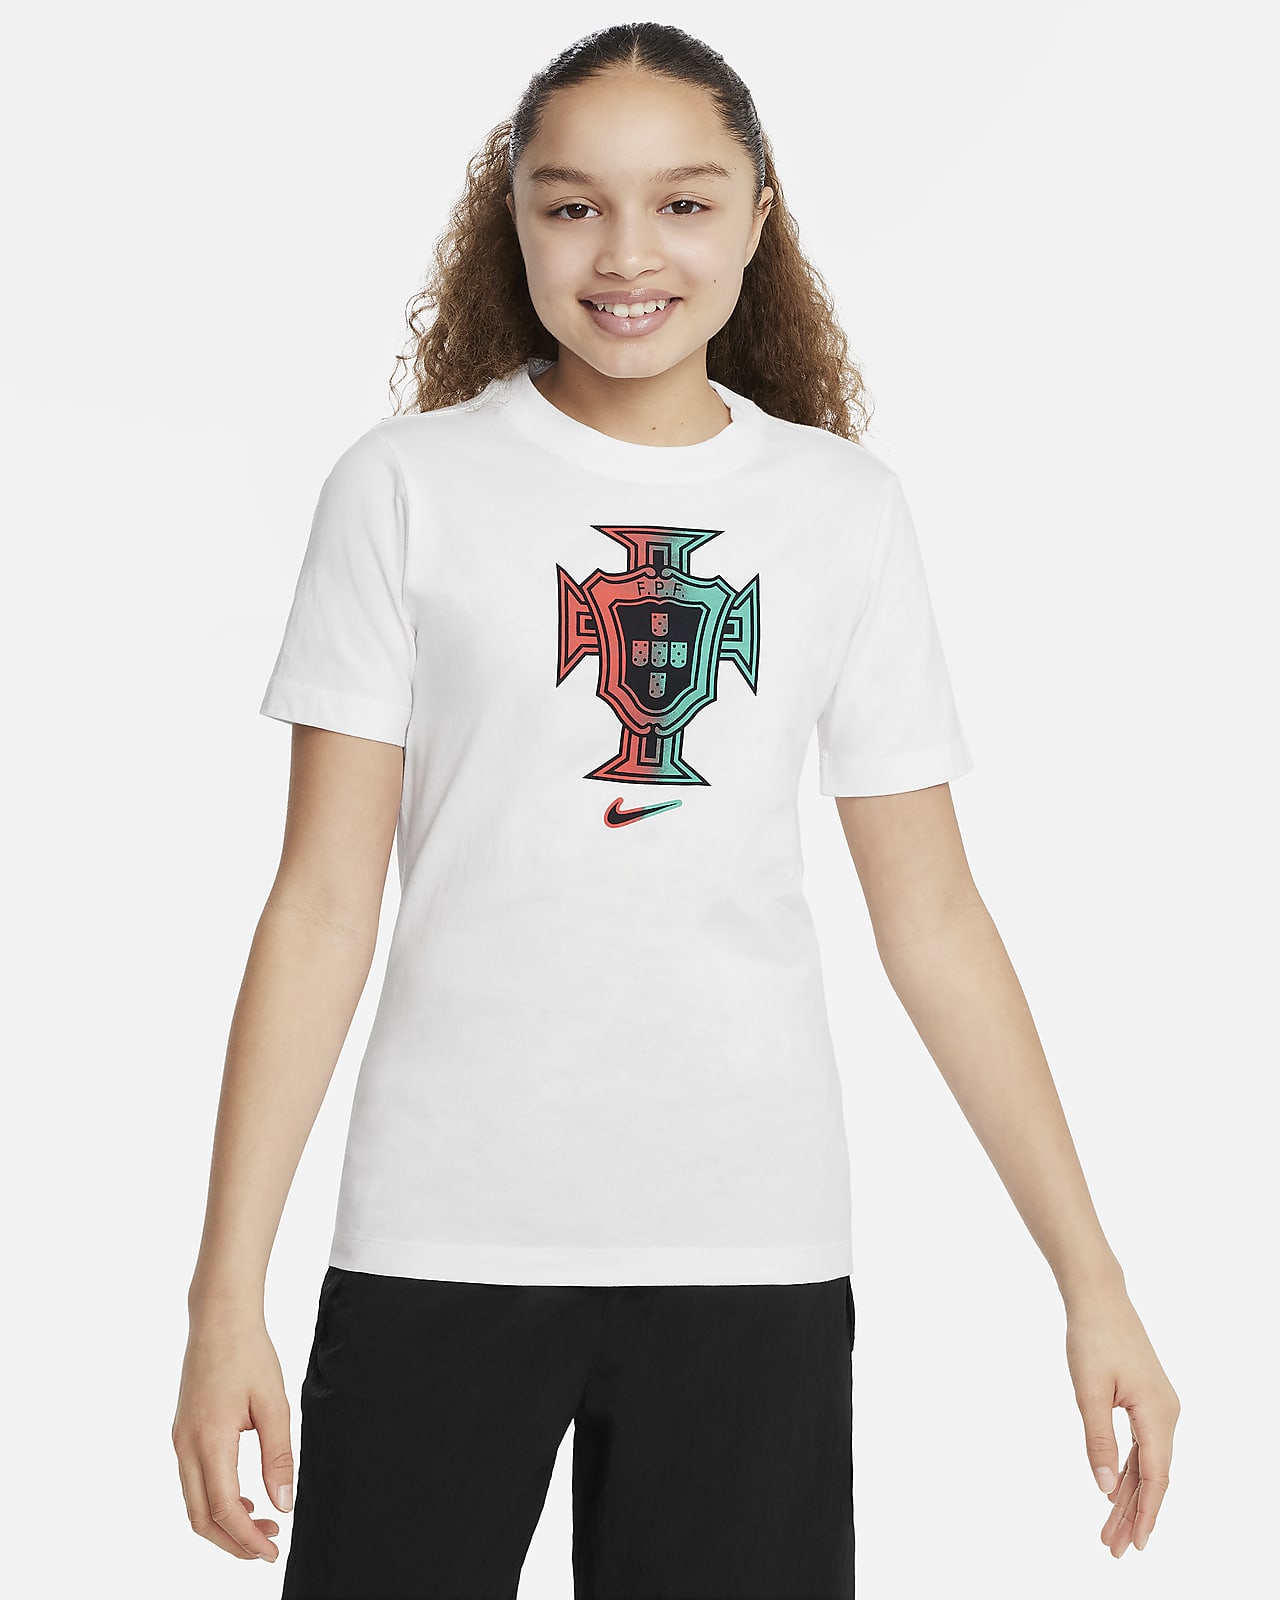 Ποδοσφαιρικό T-Shirt Nike Πορτογαλία για μεγάλα παιδιά